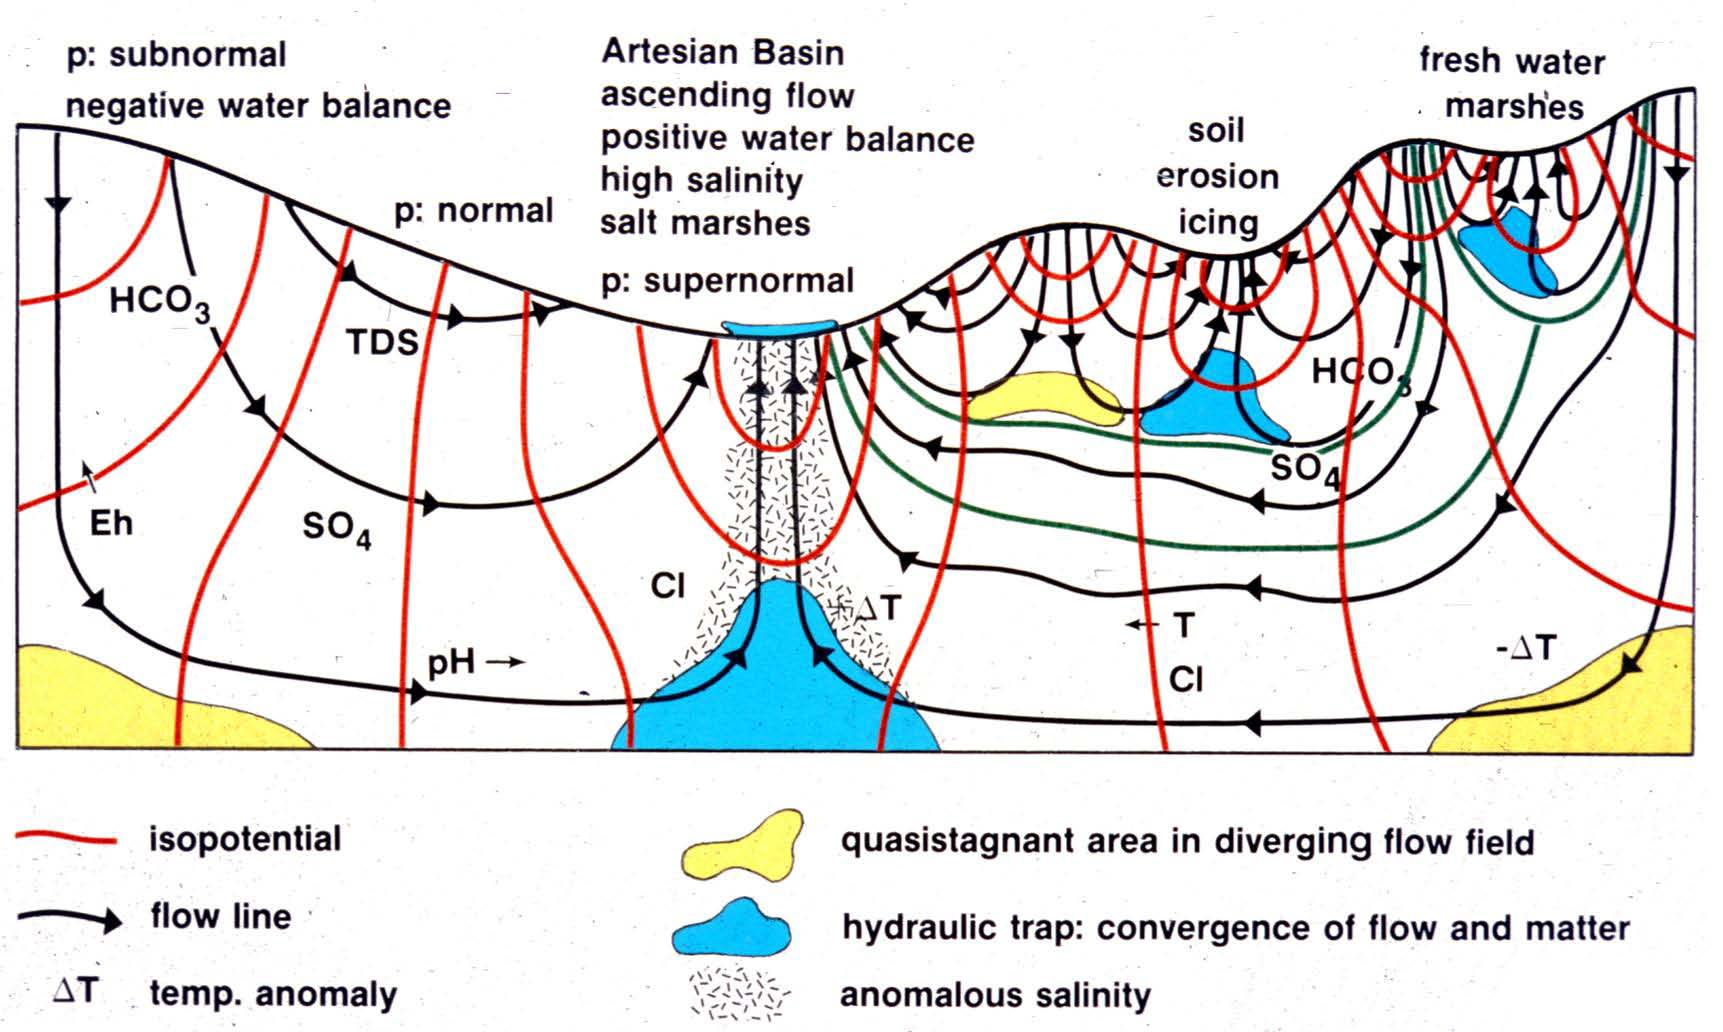 A különböző áramlások határfelületi zónáiban (diffúzió) és ott, ahol vizük ismét a felszínre kerül (megcsapolódás), olyan különleges